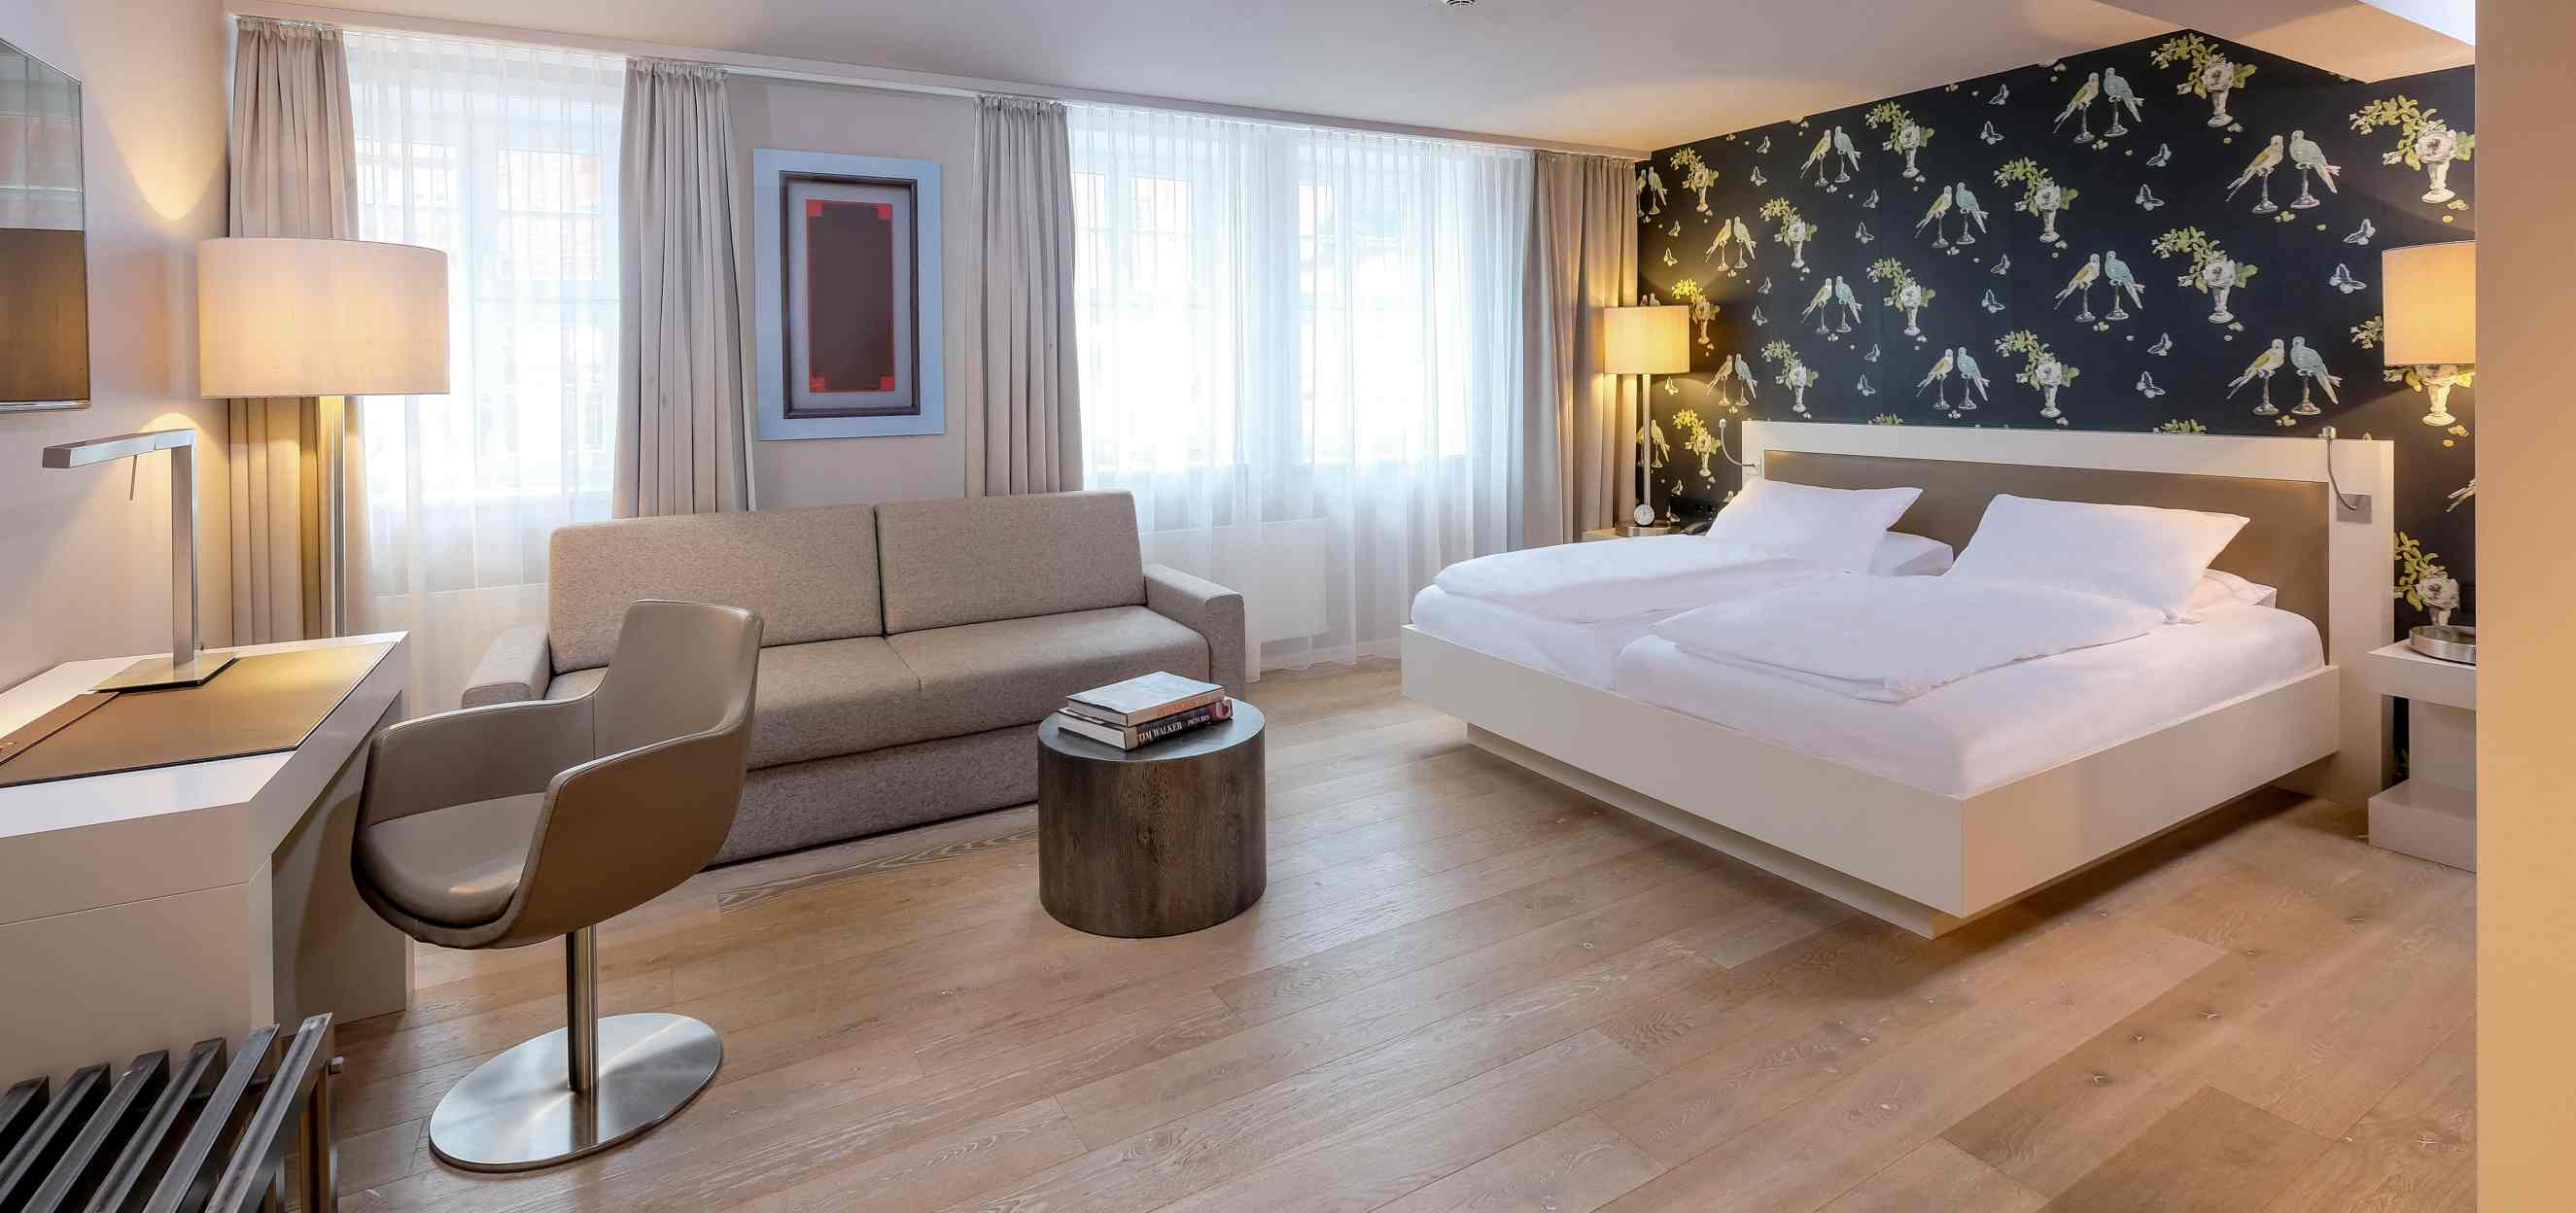 Zum Löwen Design Hotel Resort & Spa in Duderstadt - Doppelzimmer Komfort